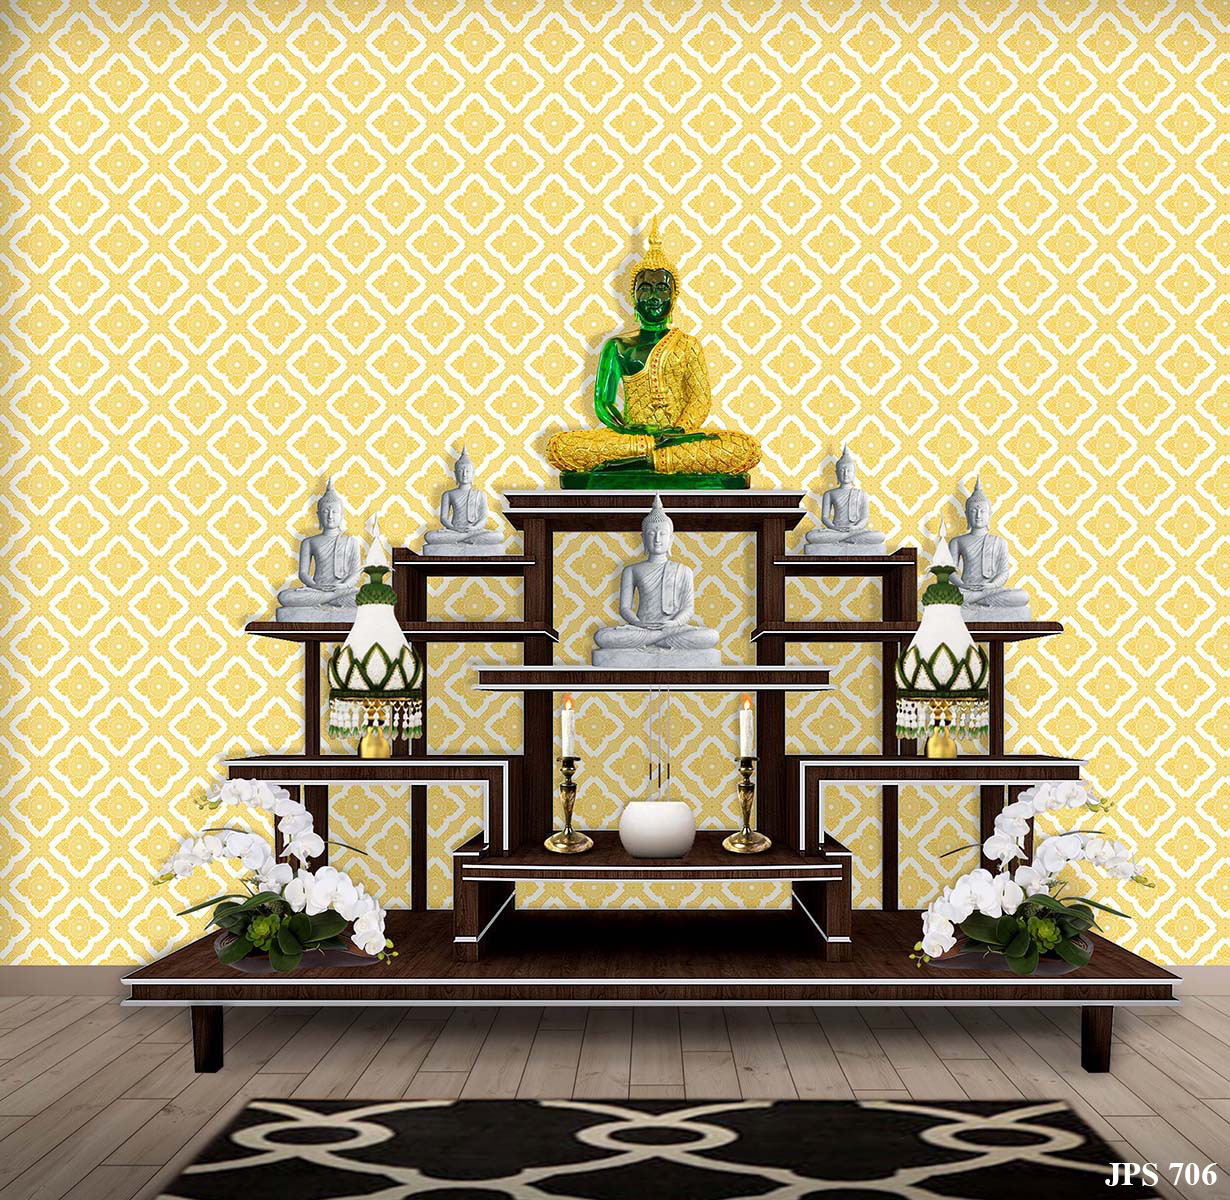 ตัวอย่างห้องพระ ตกแต่งด้วยวอลเปเปอร์ลายดอกประจำยาม สีเหลืองพื้นขาว